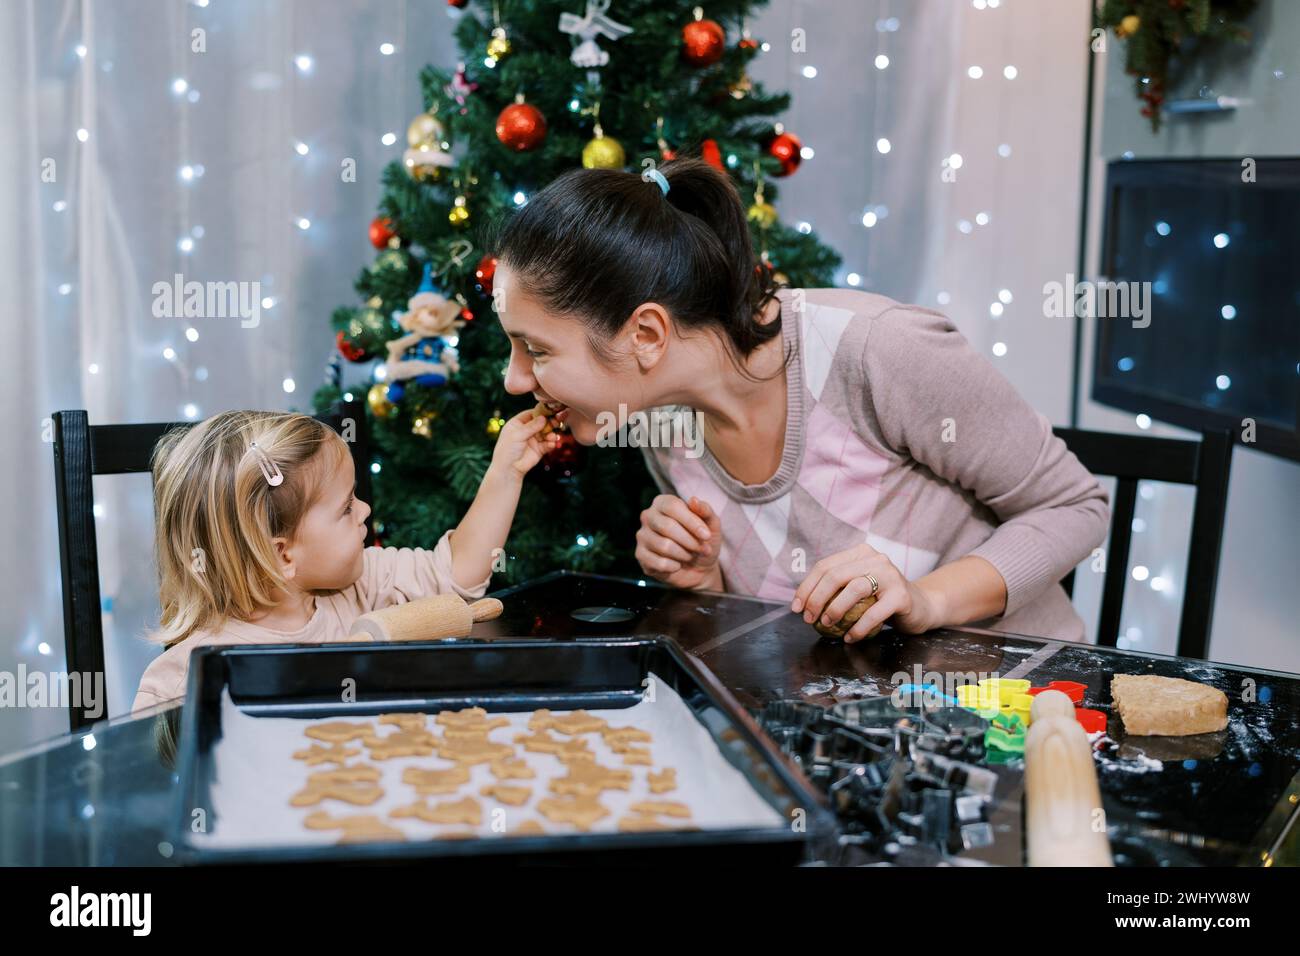 Petite fille traite sa mère avec un biscuit tout en étant assise à une table avec des biscuits crus sur un plateau Banque D'Images